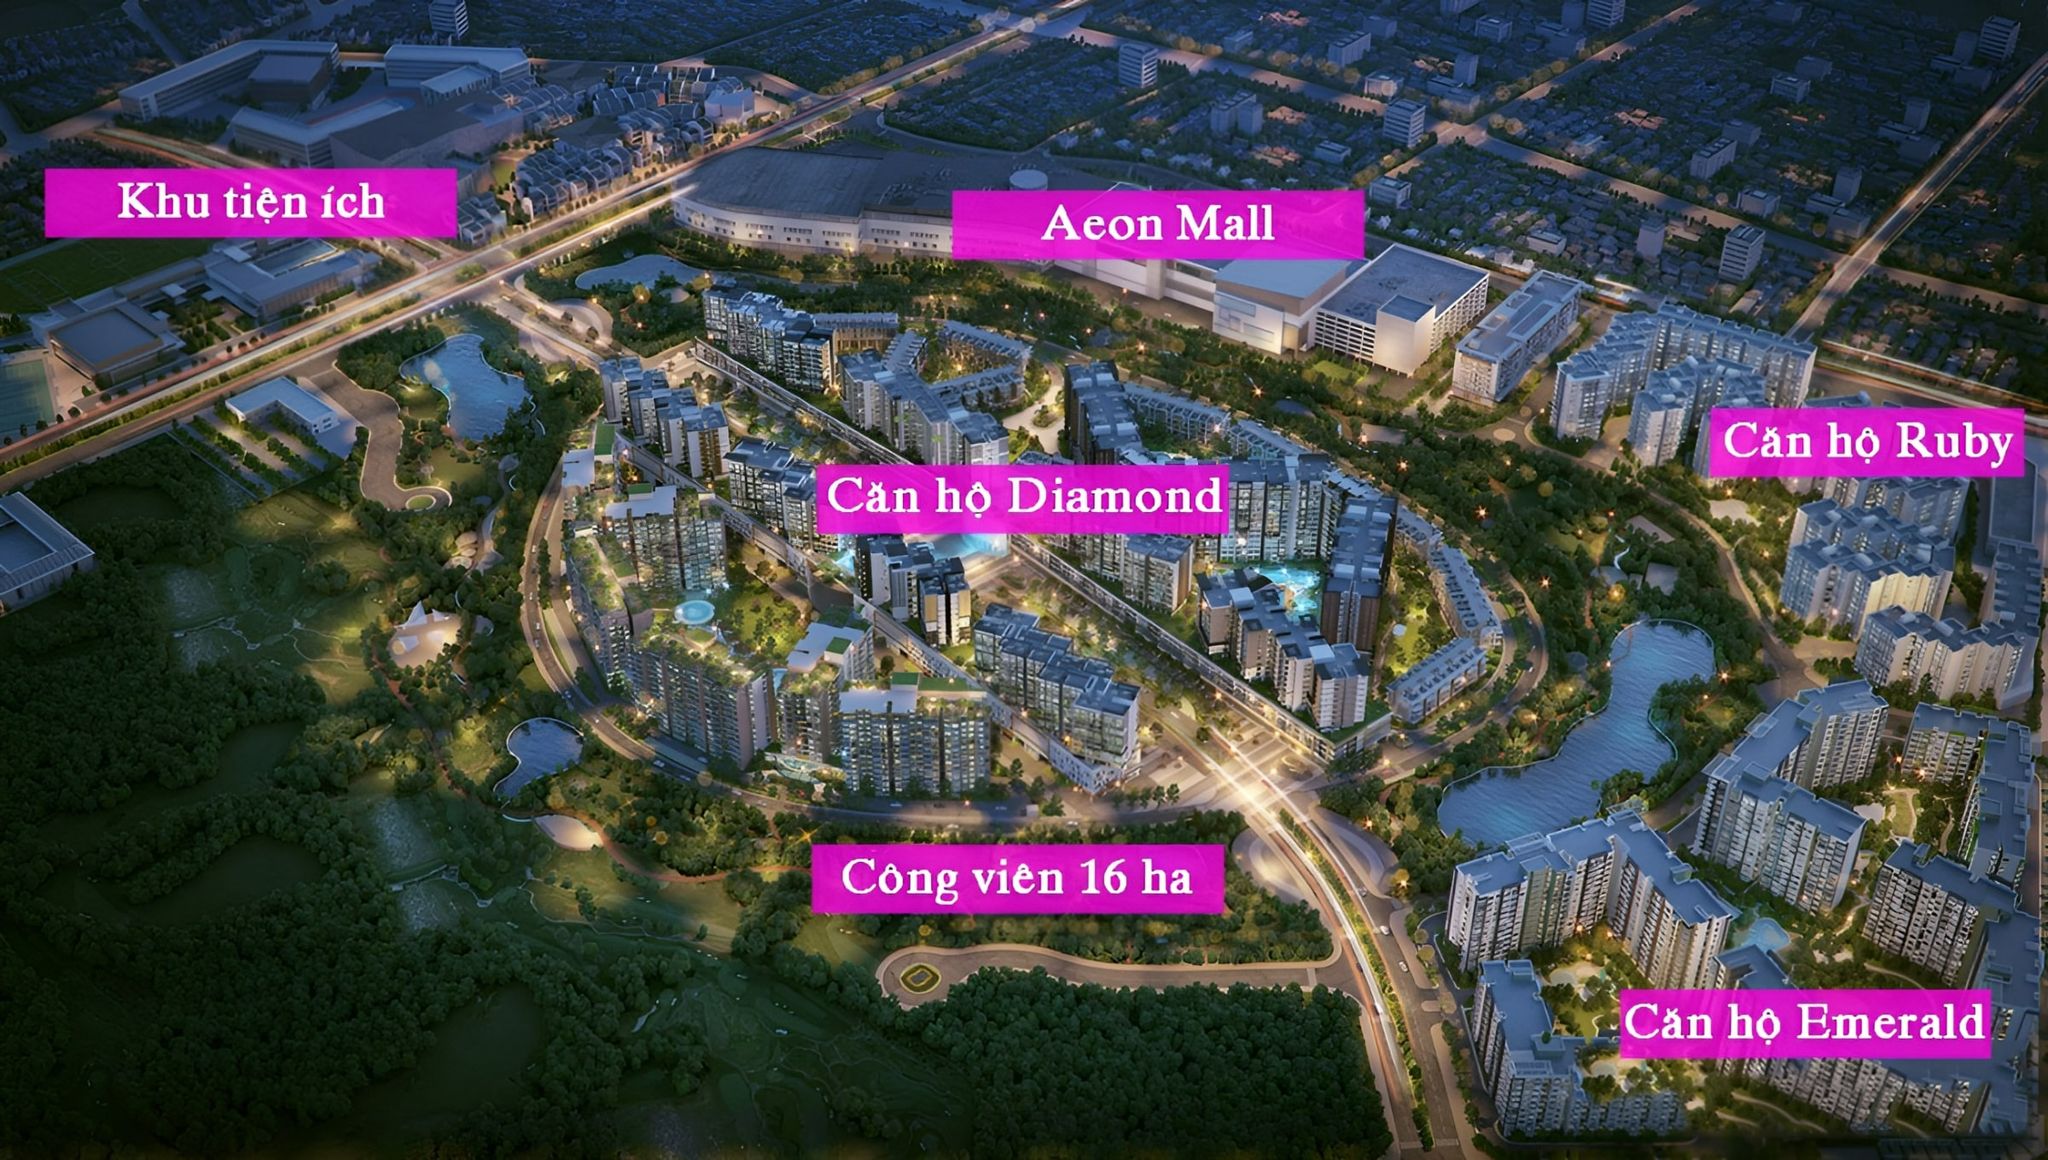 Quy hoạch tổng thể khu đô thị Celadon City